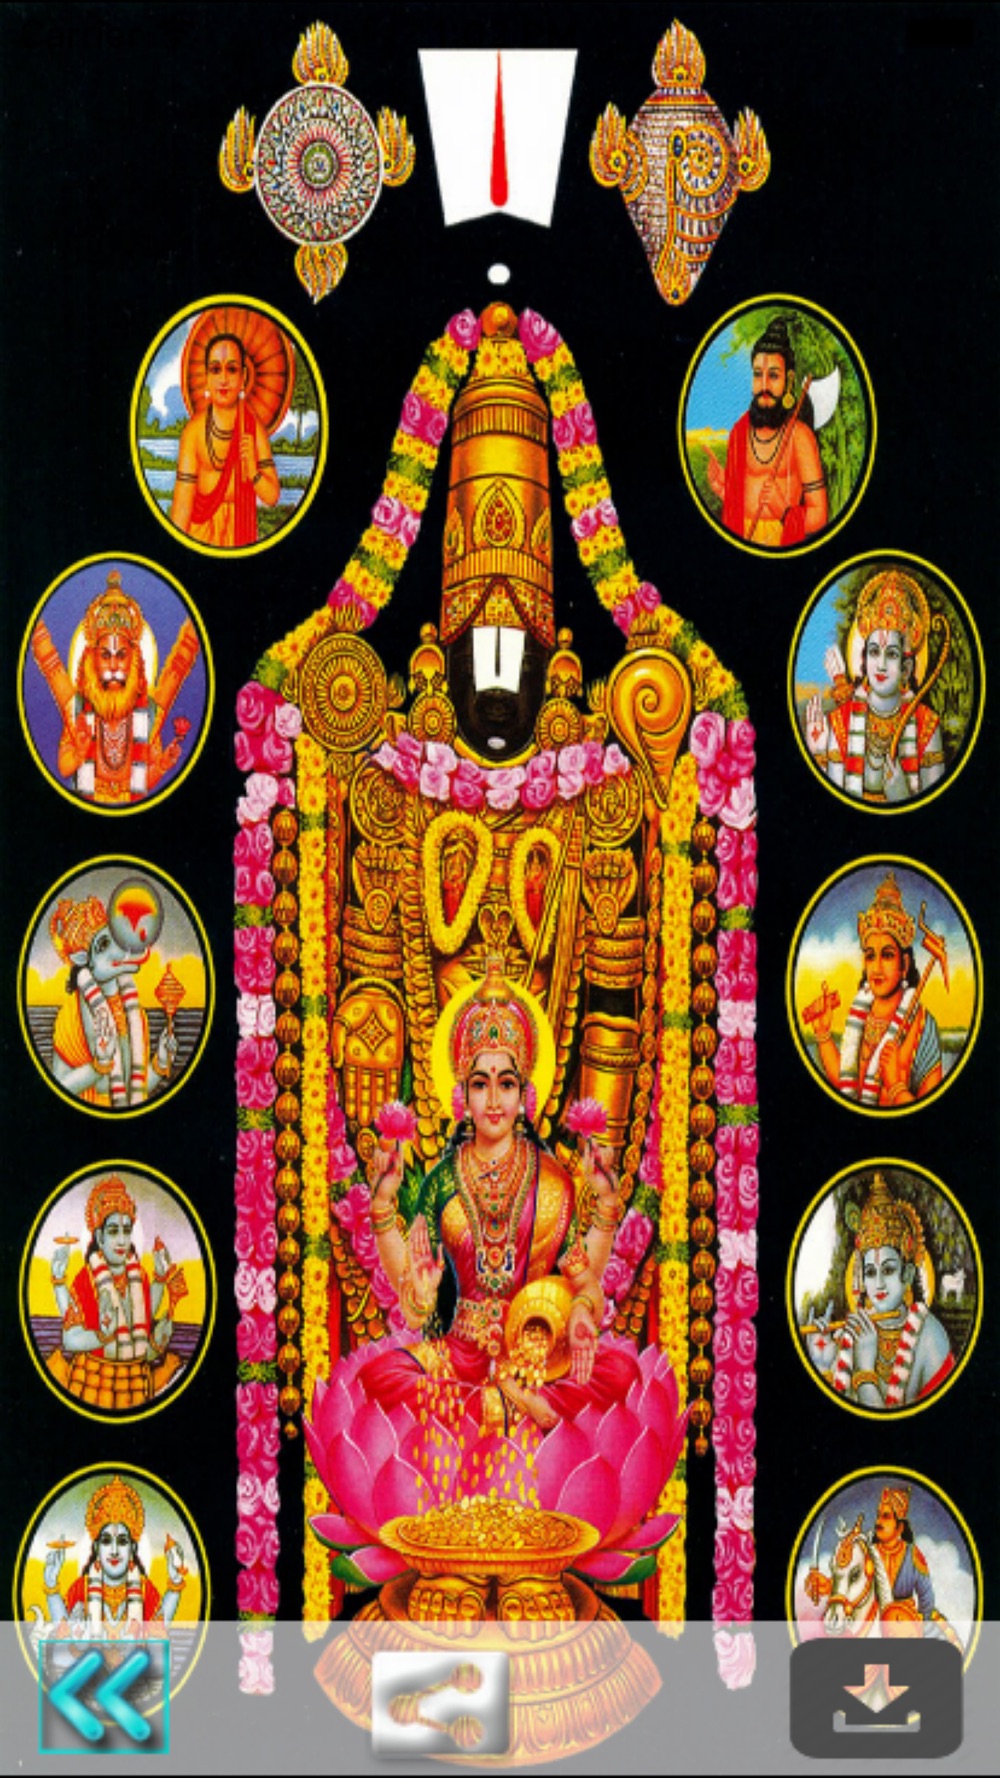 100+] Lord Venkateswara 4k Wallpapers | Wallpapers.com